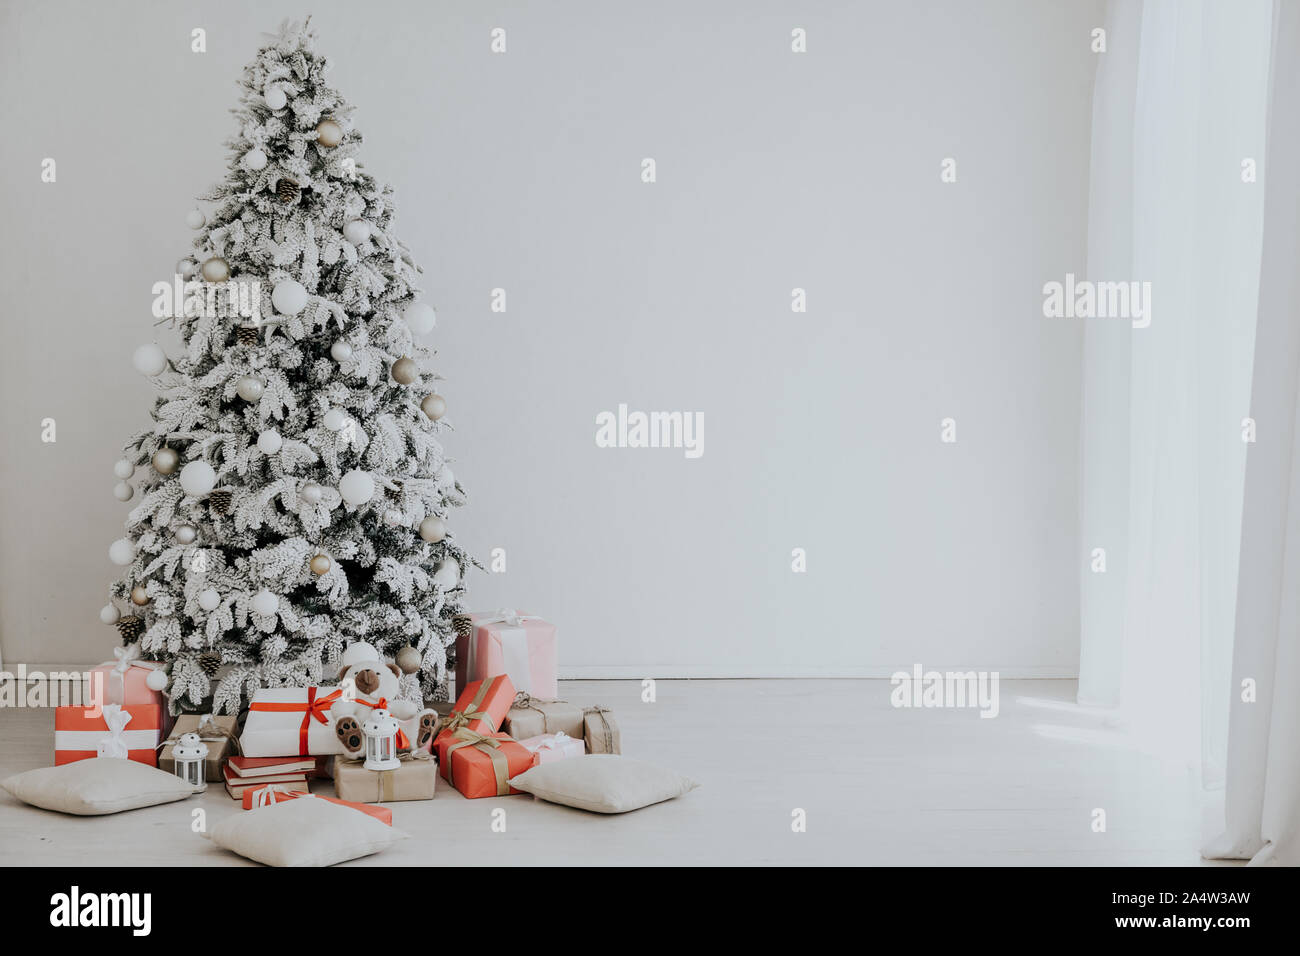 Albero Di Natale 2020.Scheda Di Natale Albero Di Natale Con Holiday Regali Di Natale 2020 Foto Stock Alamy